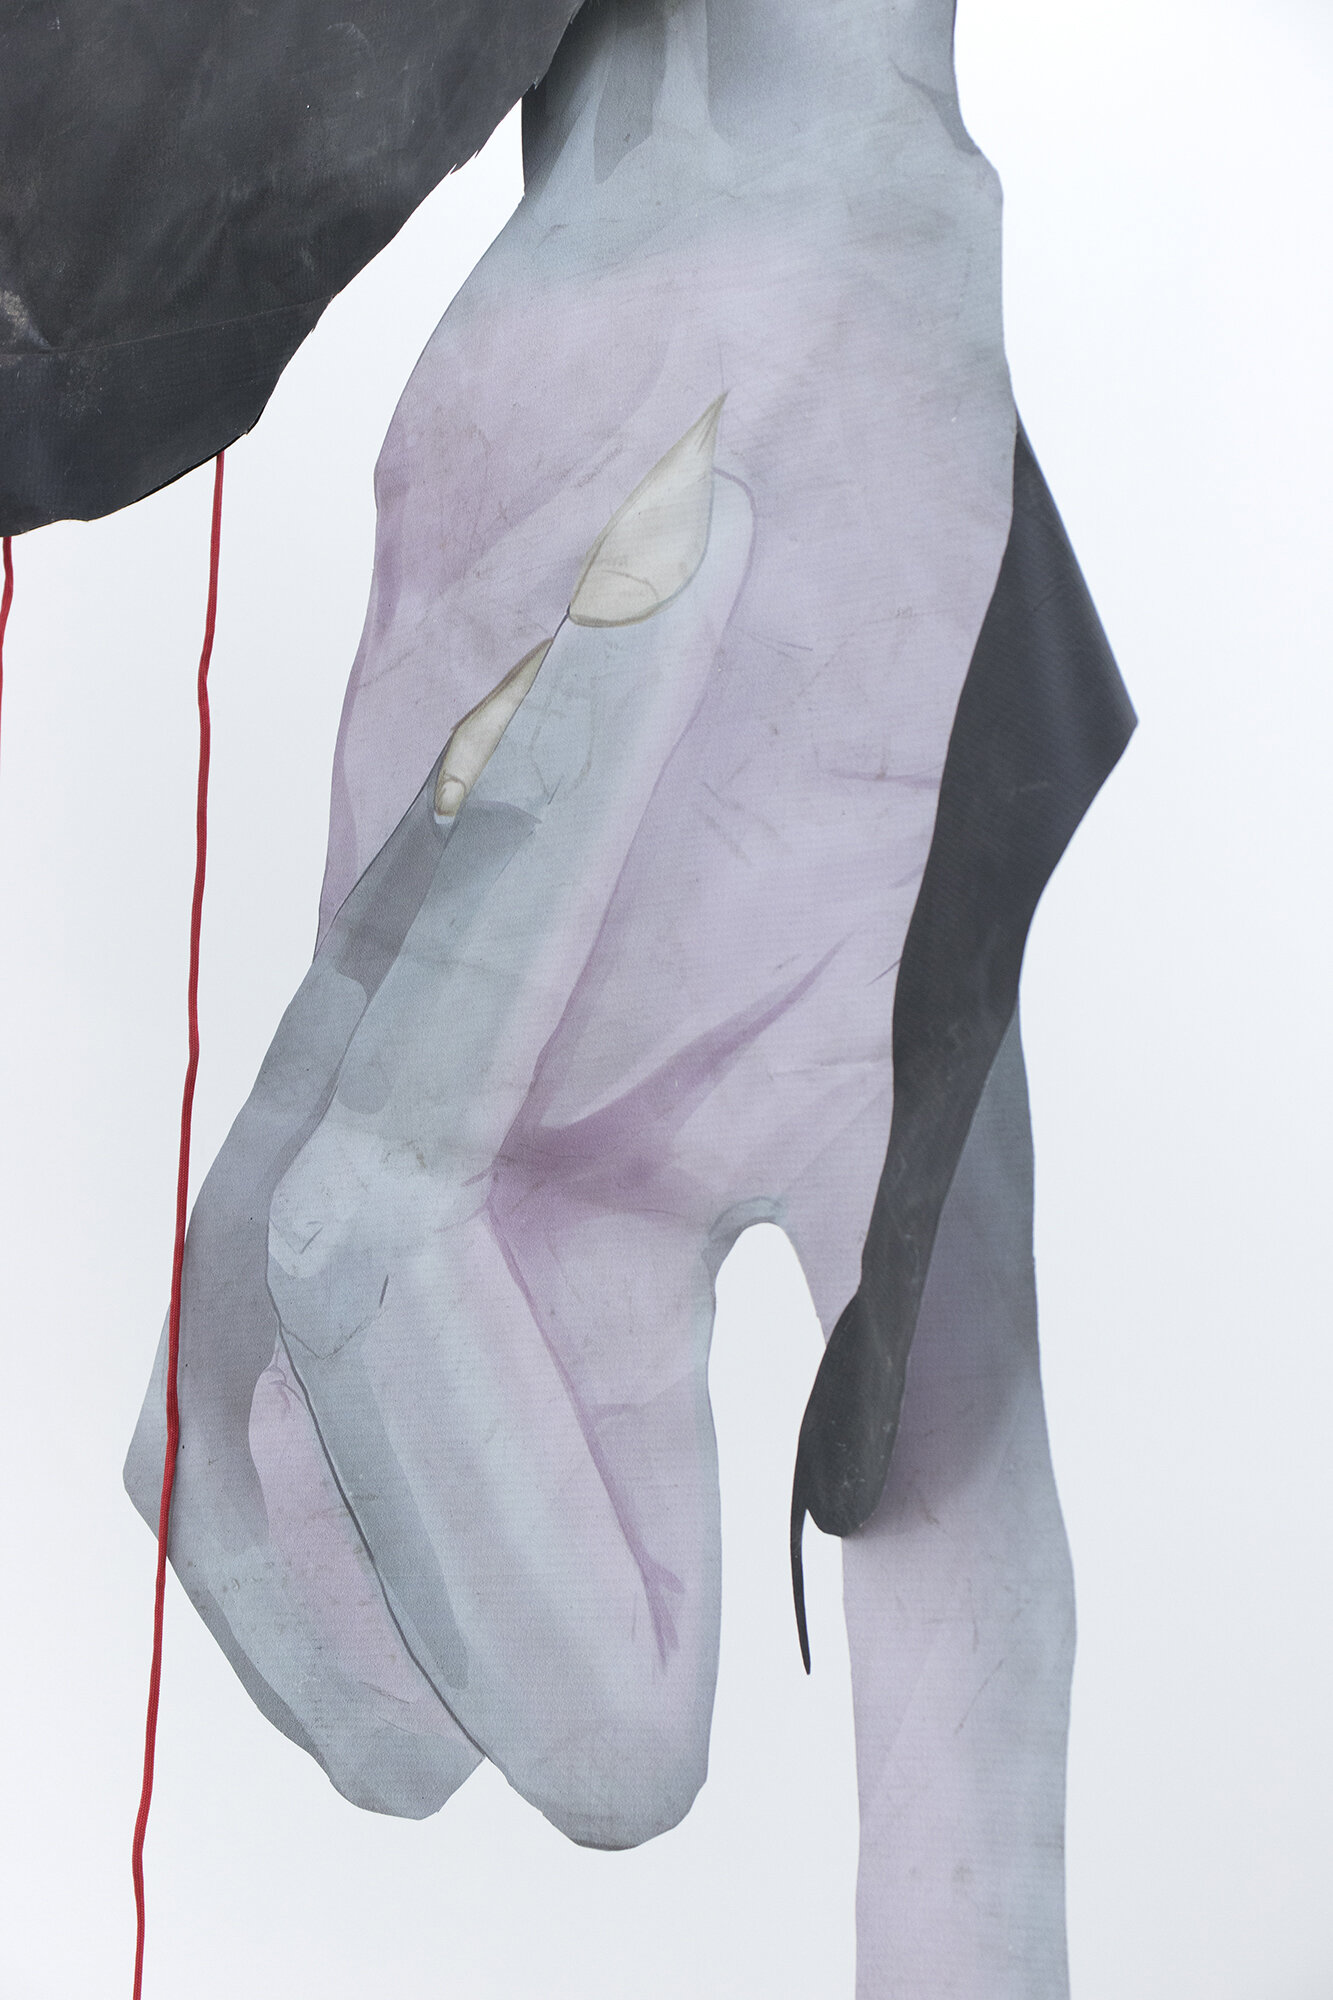  Jonathan Mildenberg  The Veil (Rikki) , 2020 (detail) Printed vinyl, nylon cord, metal grommets Illustration designed with Andrew Mildenberg 120 x 72 inches (305 x 193 cm) JM9 